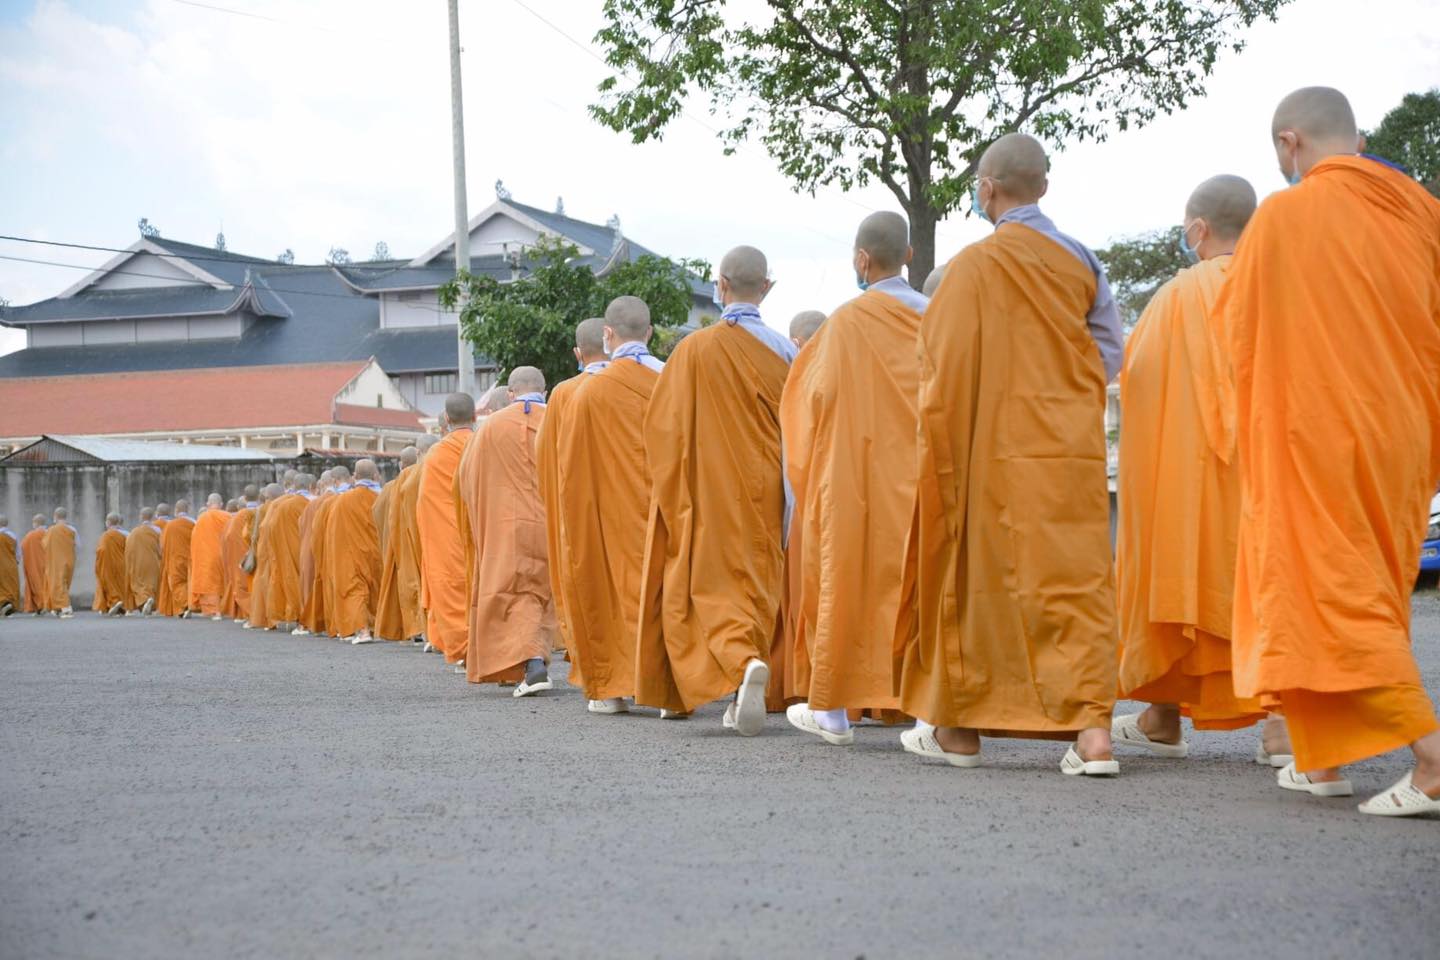 Tu sĩ Phật giáo là người từ bỏ nếp sống thế tục, còn gọi là người xuất gia, khép mình trong nếp sống đạo đức và hành trì theo pháp môn đã được Đức Phật thuyết định.